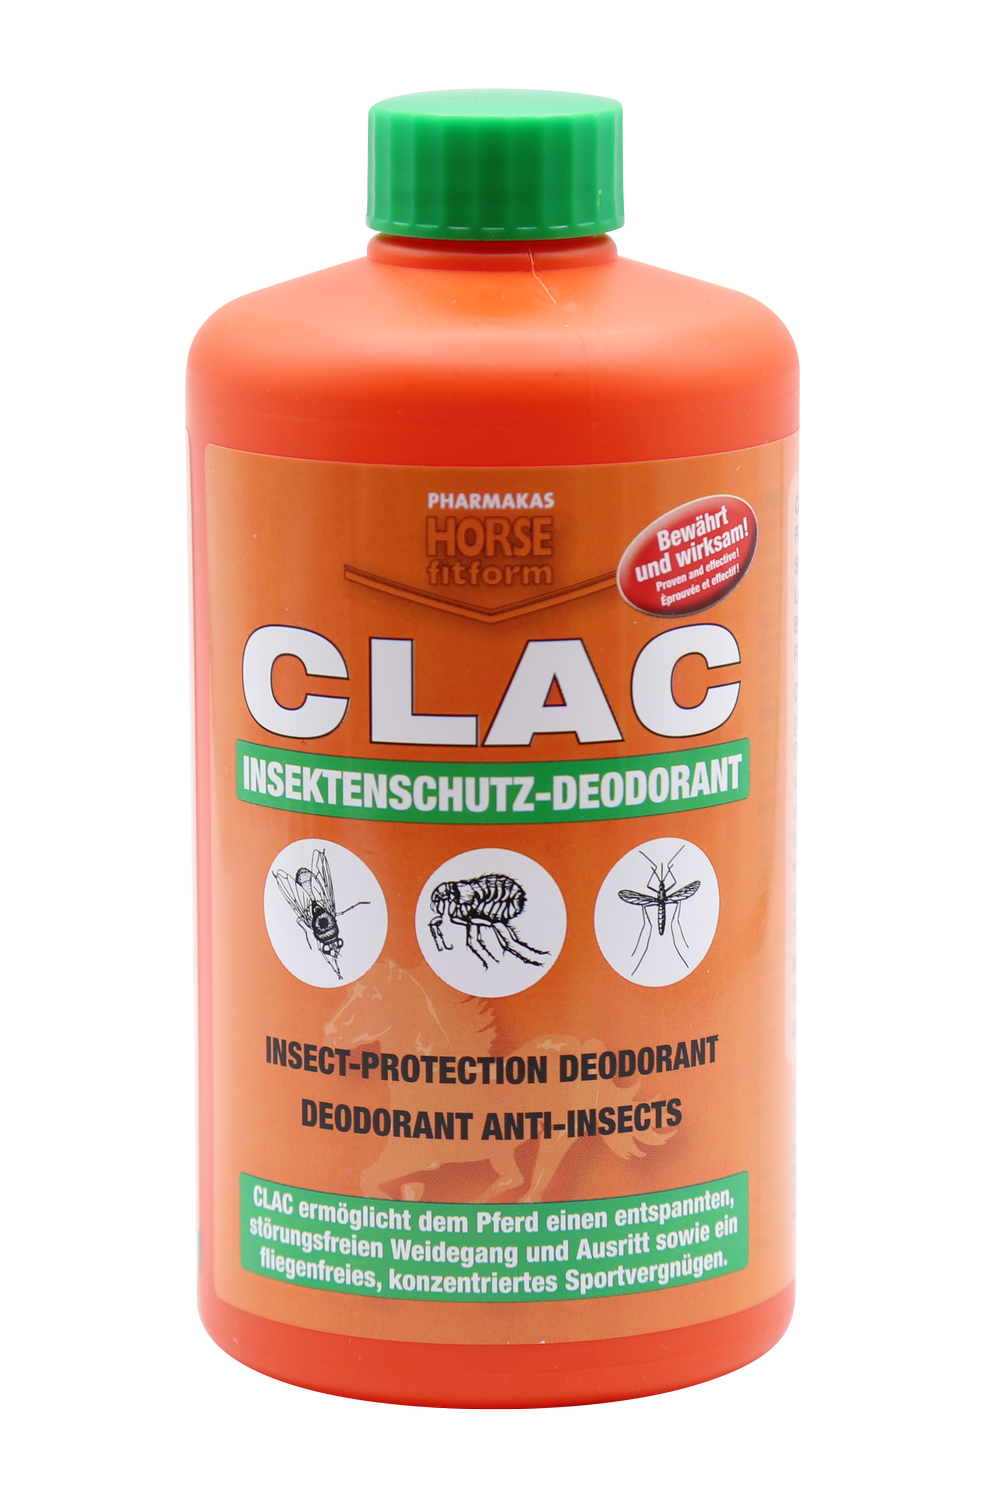 CLAC Insektenschutz-Deodorant 1 l